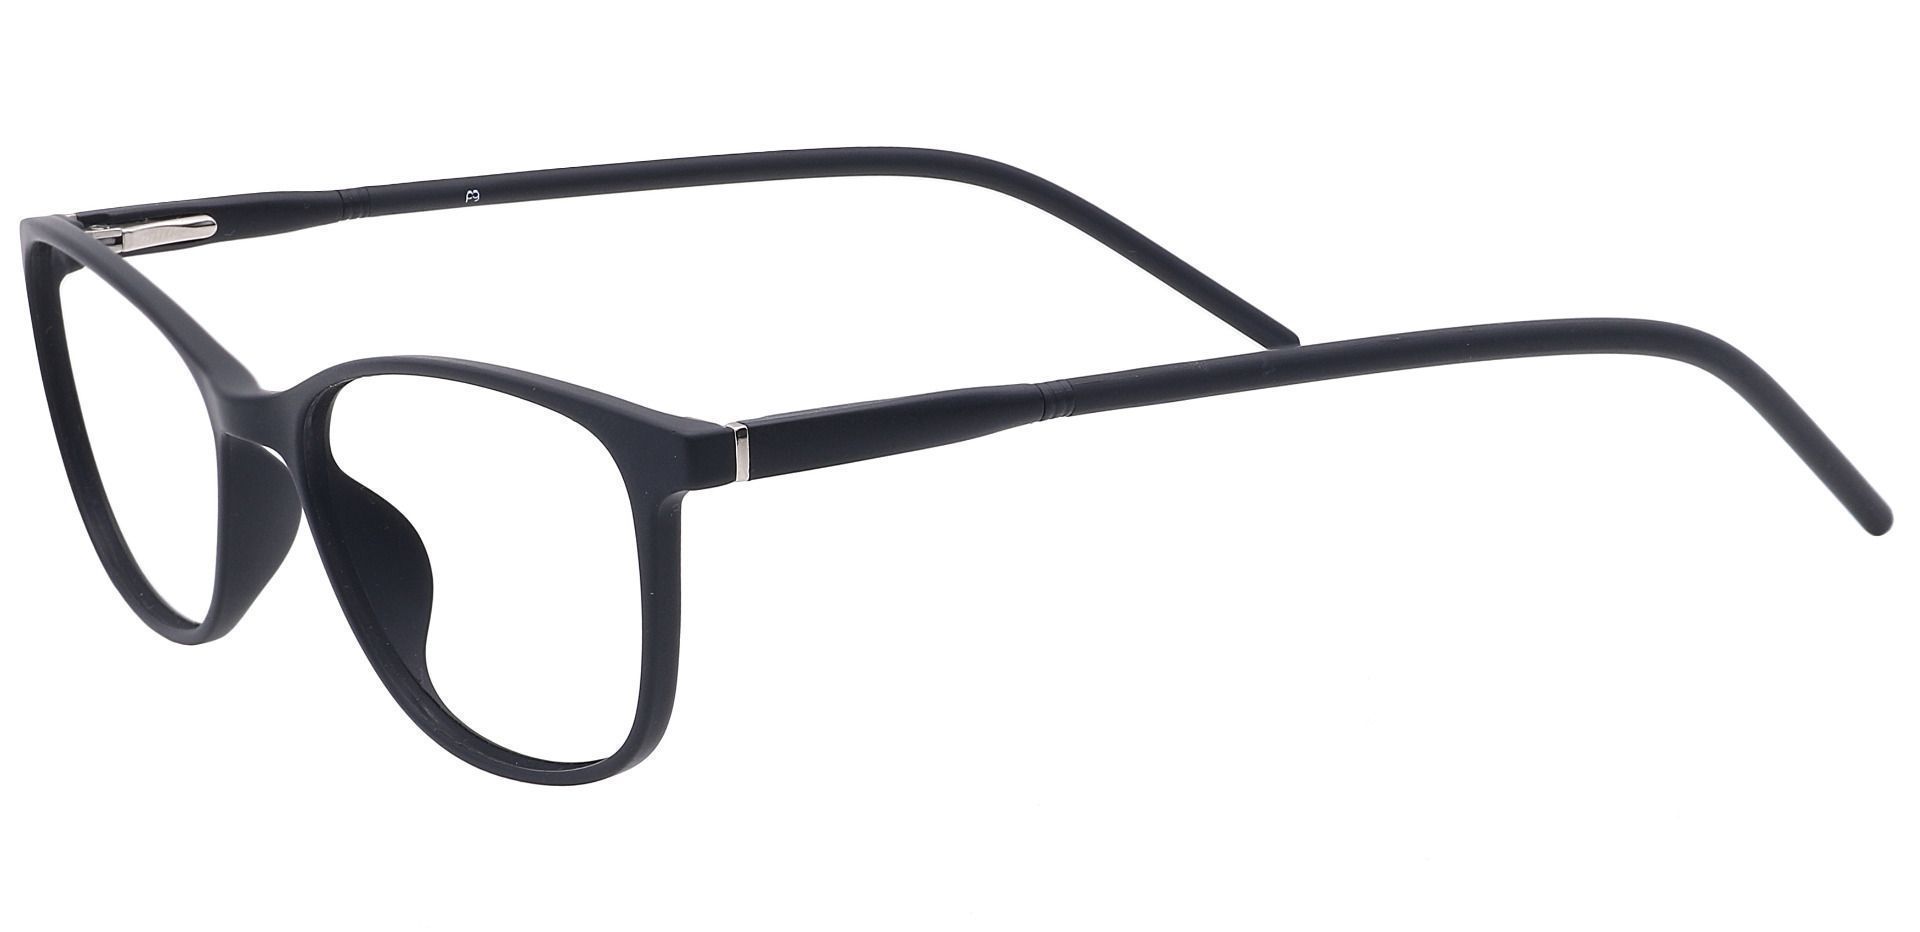 Hazel Square Eyeglasses Frame - Black